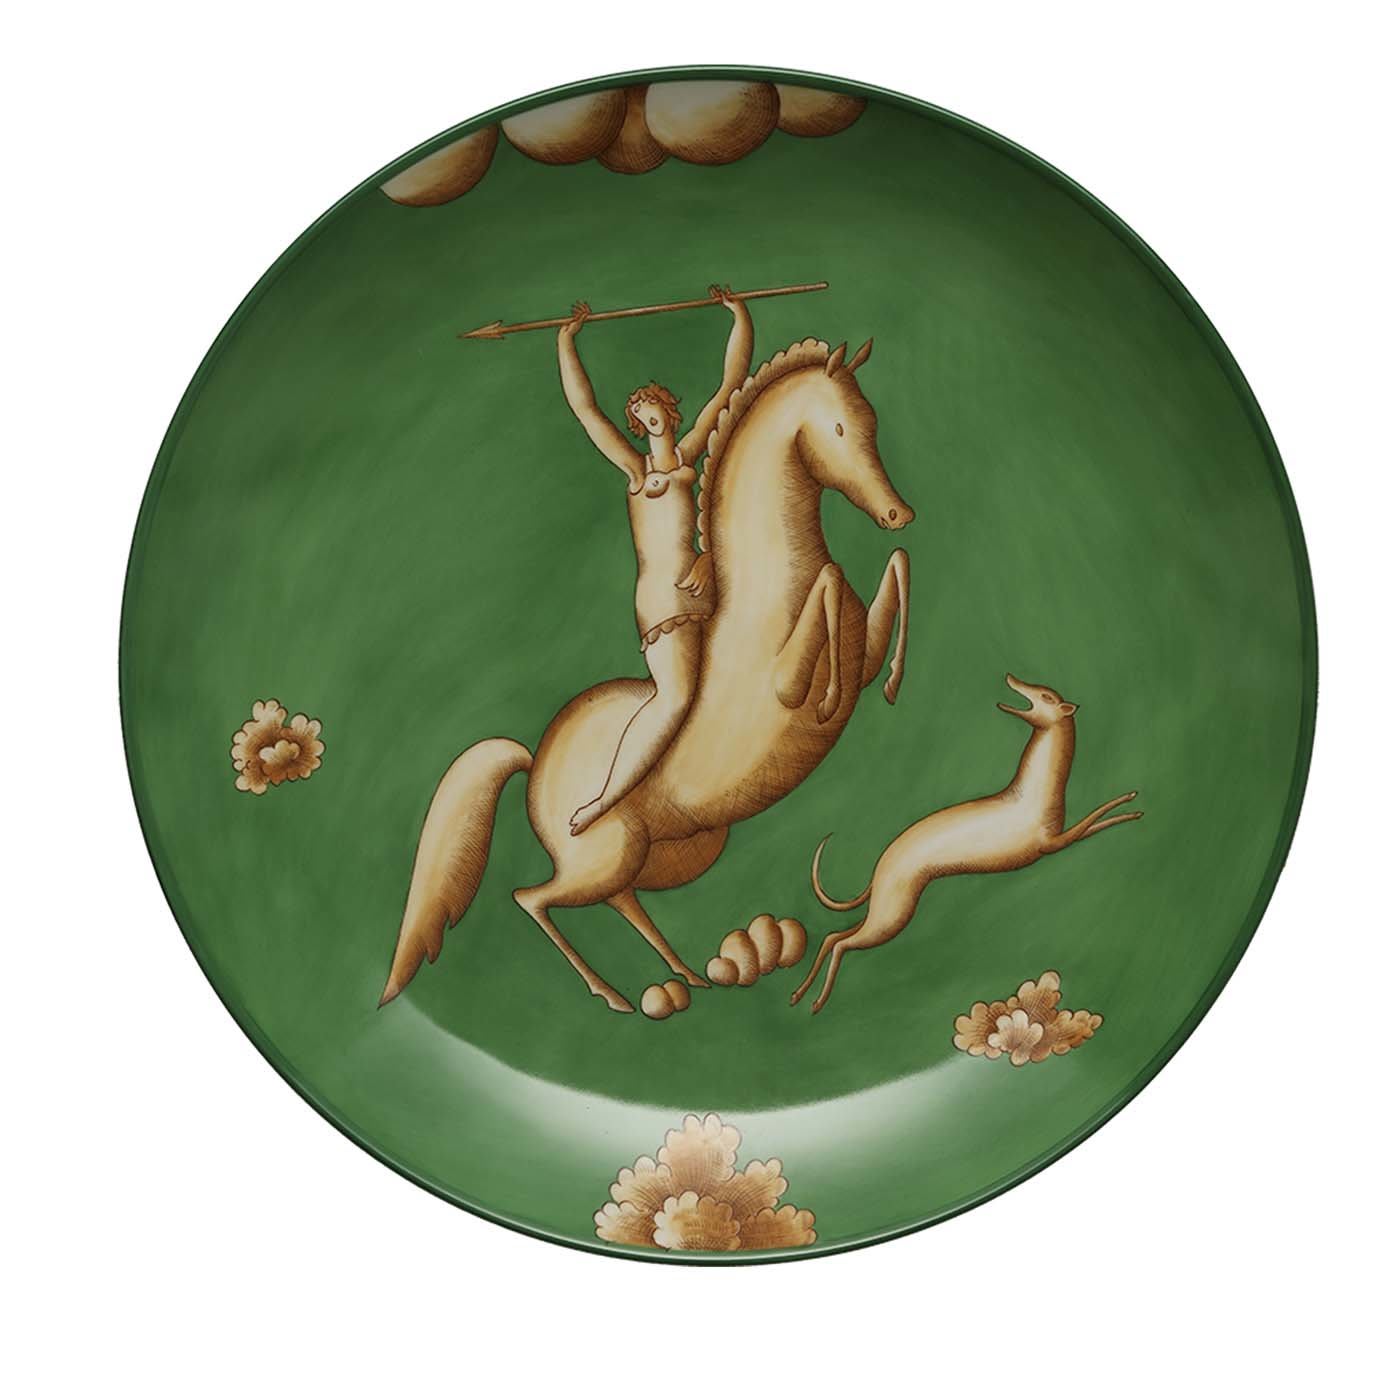 La Venatoria Green Amazon Plate - Limited Edition - GINORI 1735